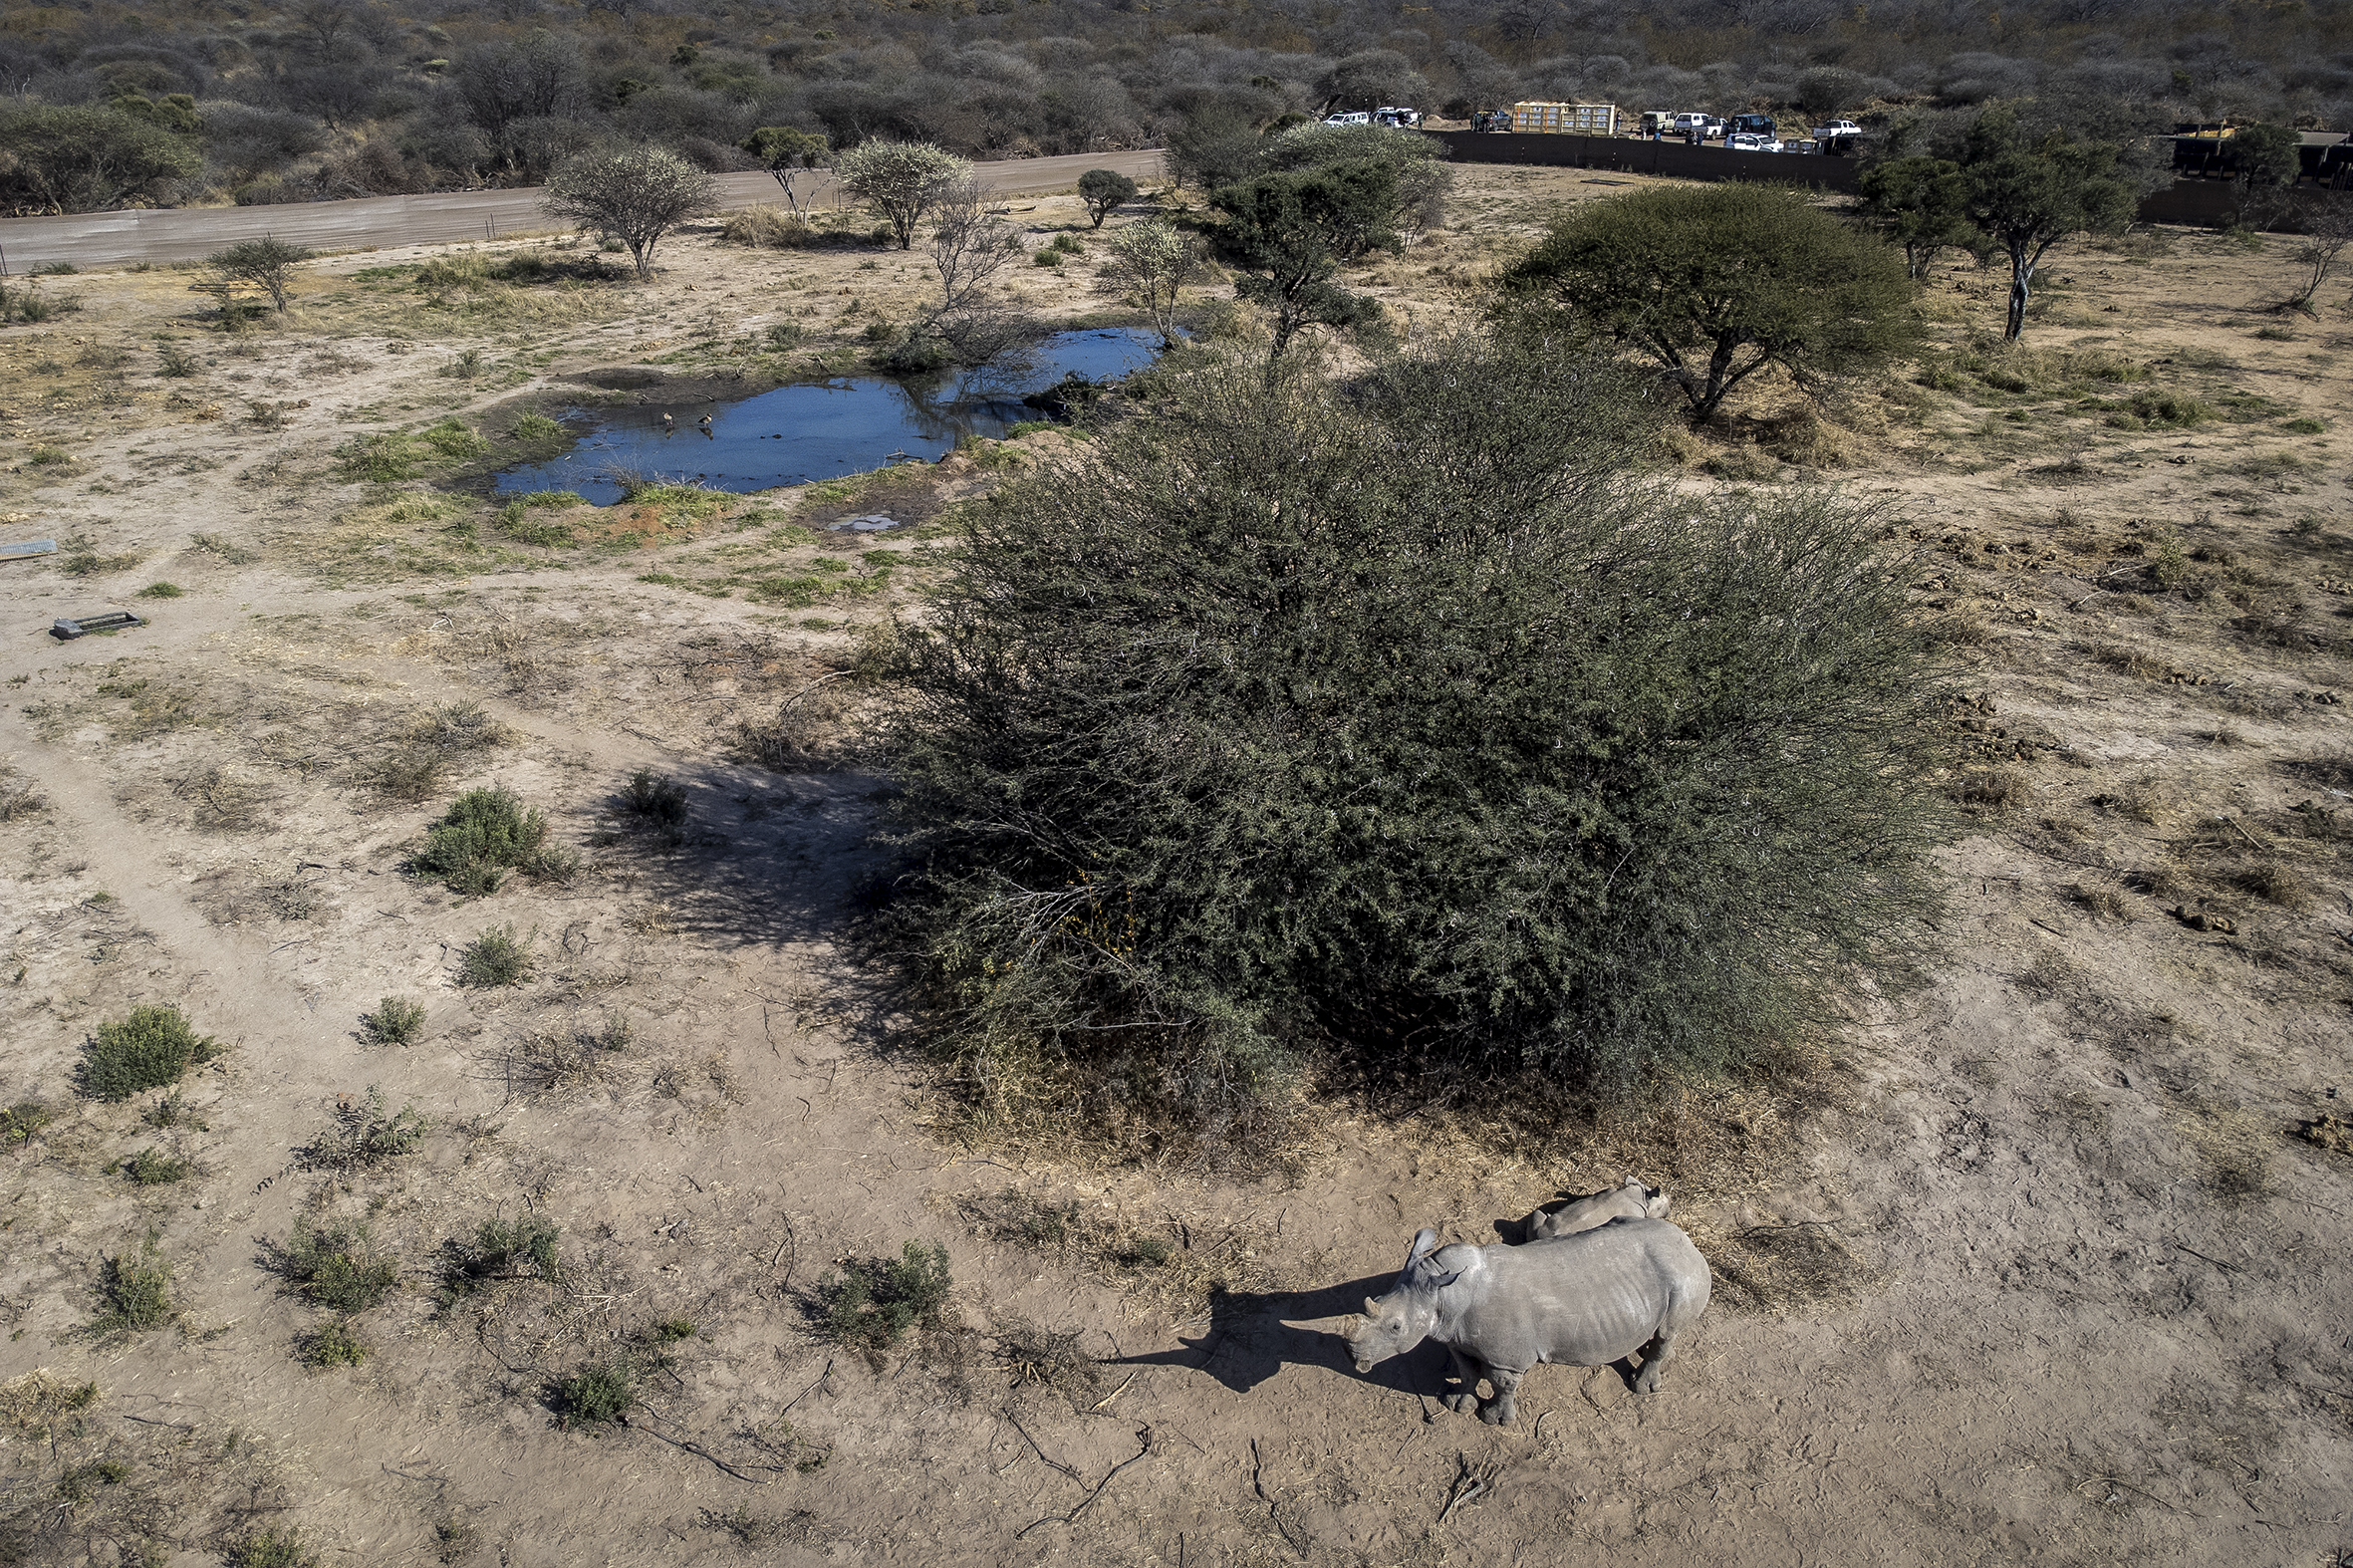 rhino and calf translocation